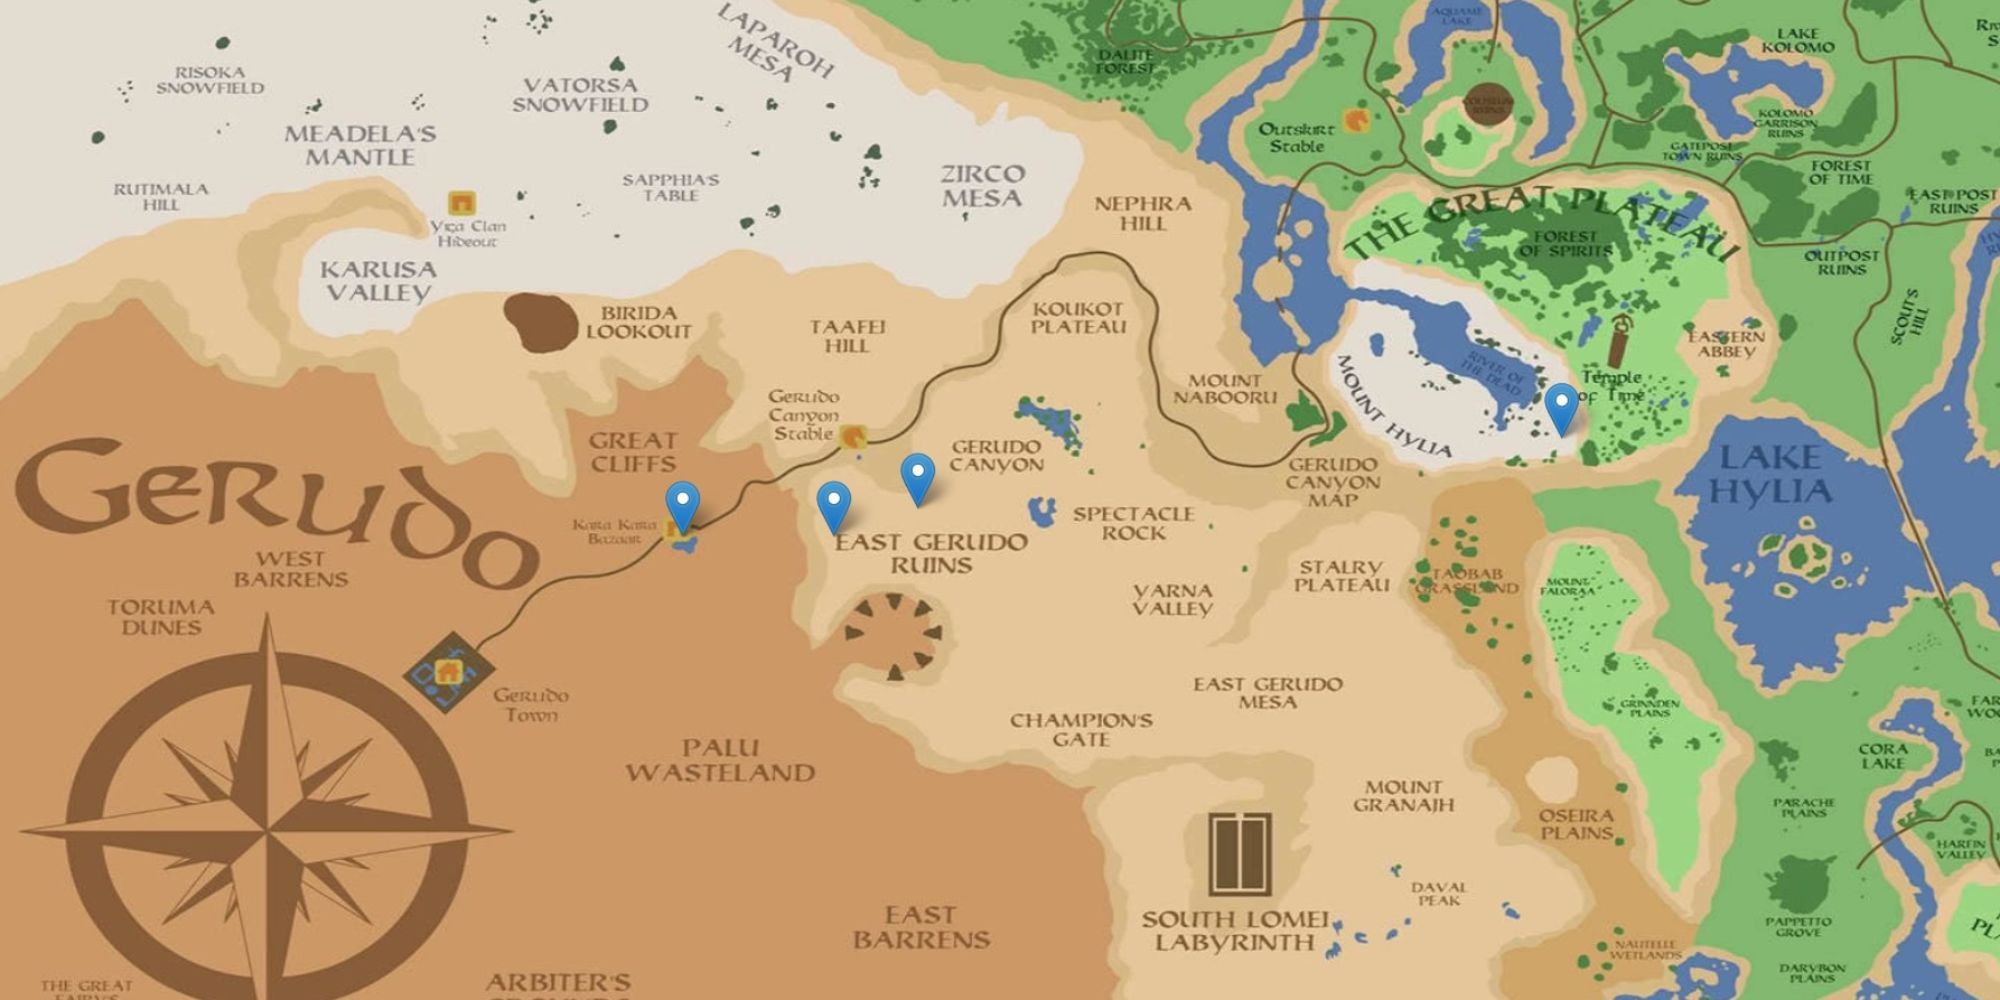 zelda breath of the wild interactive map download